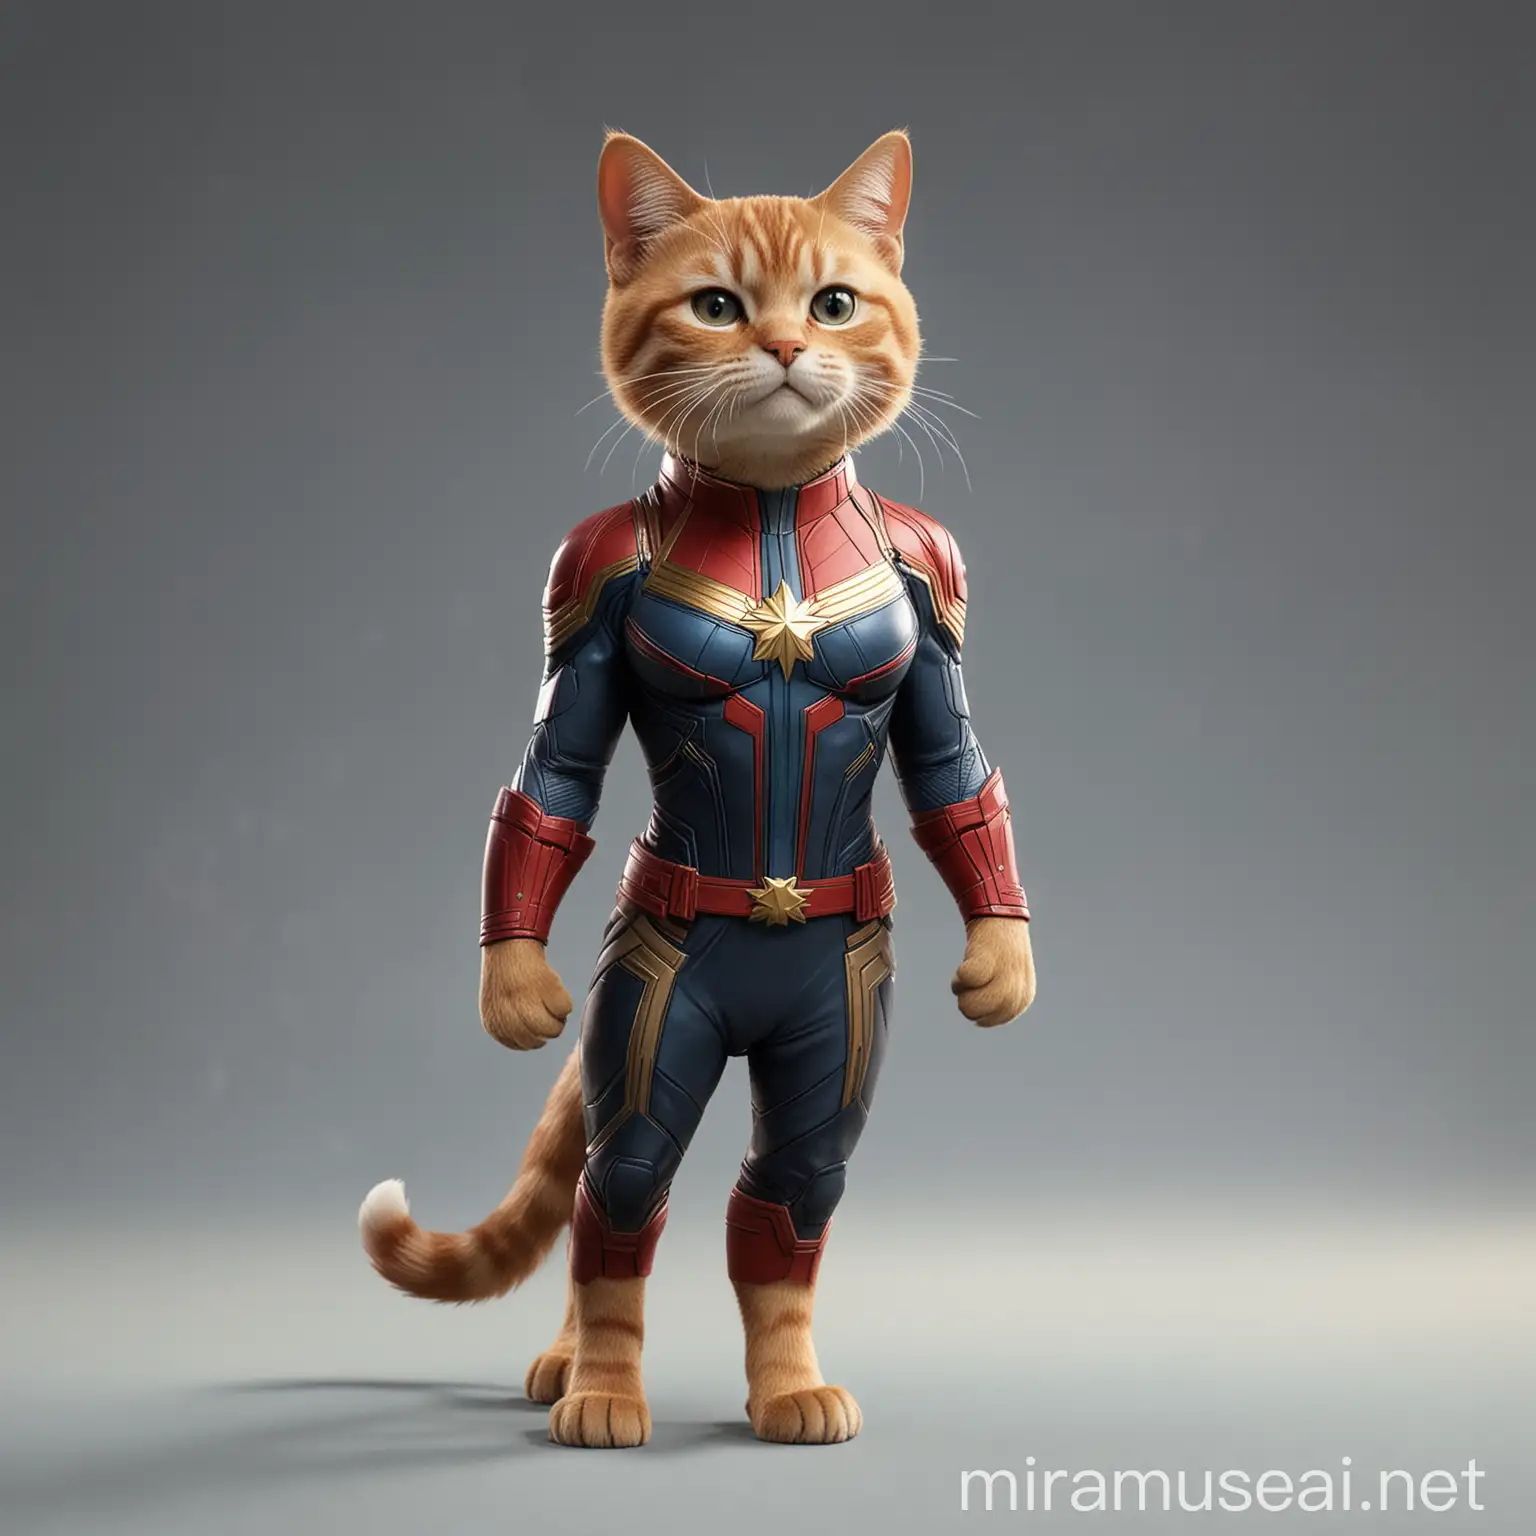 Captain Marvel Style Cat Standing full body